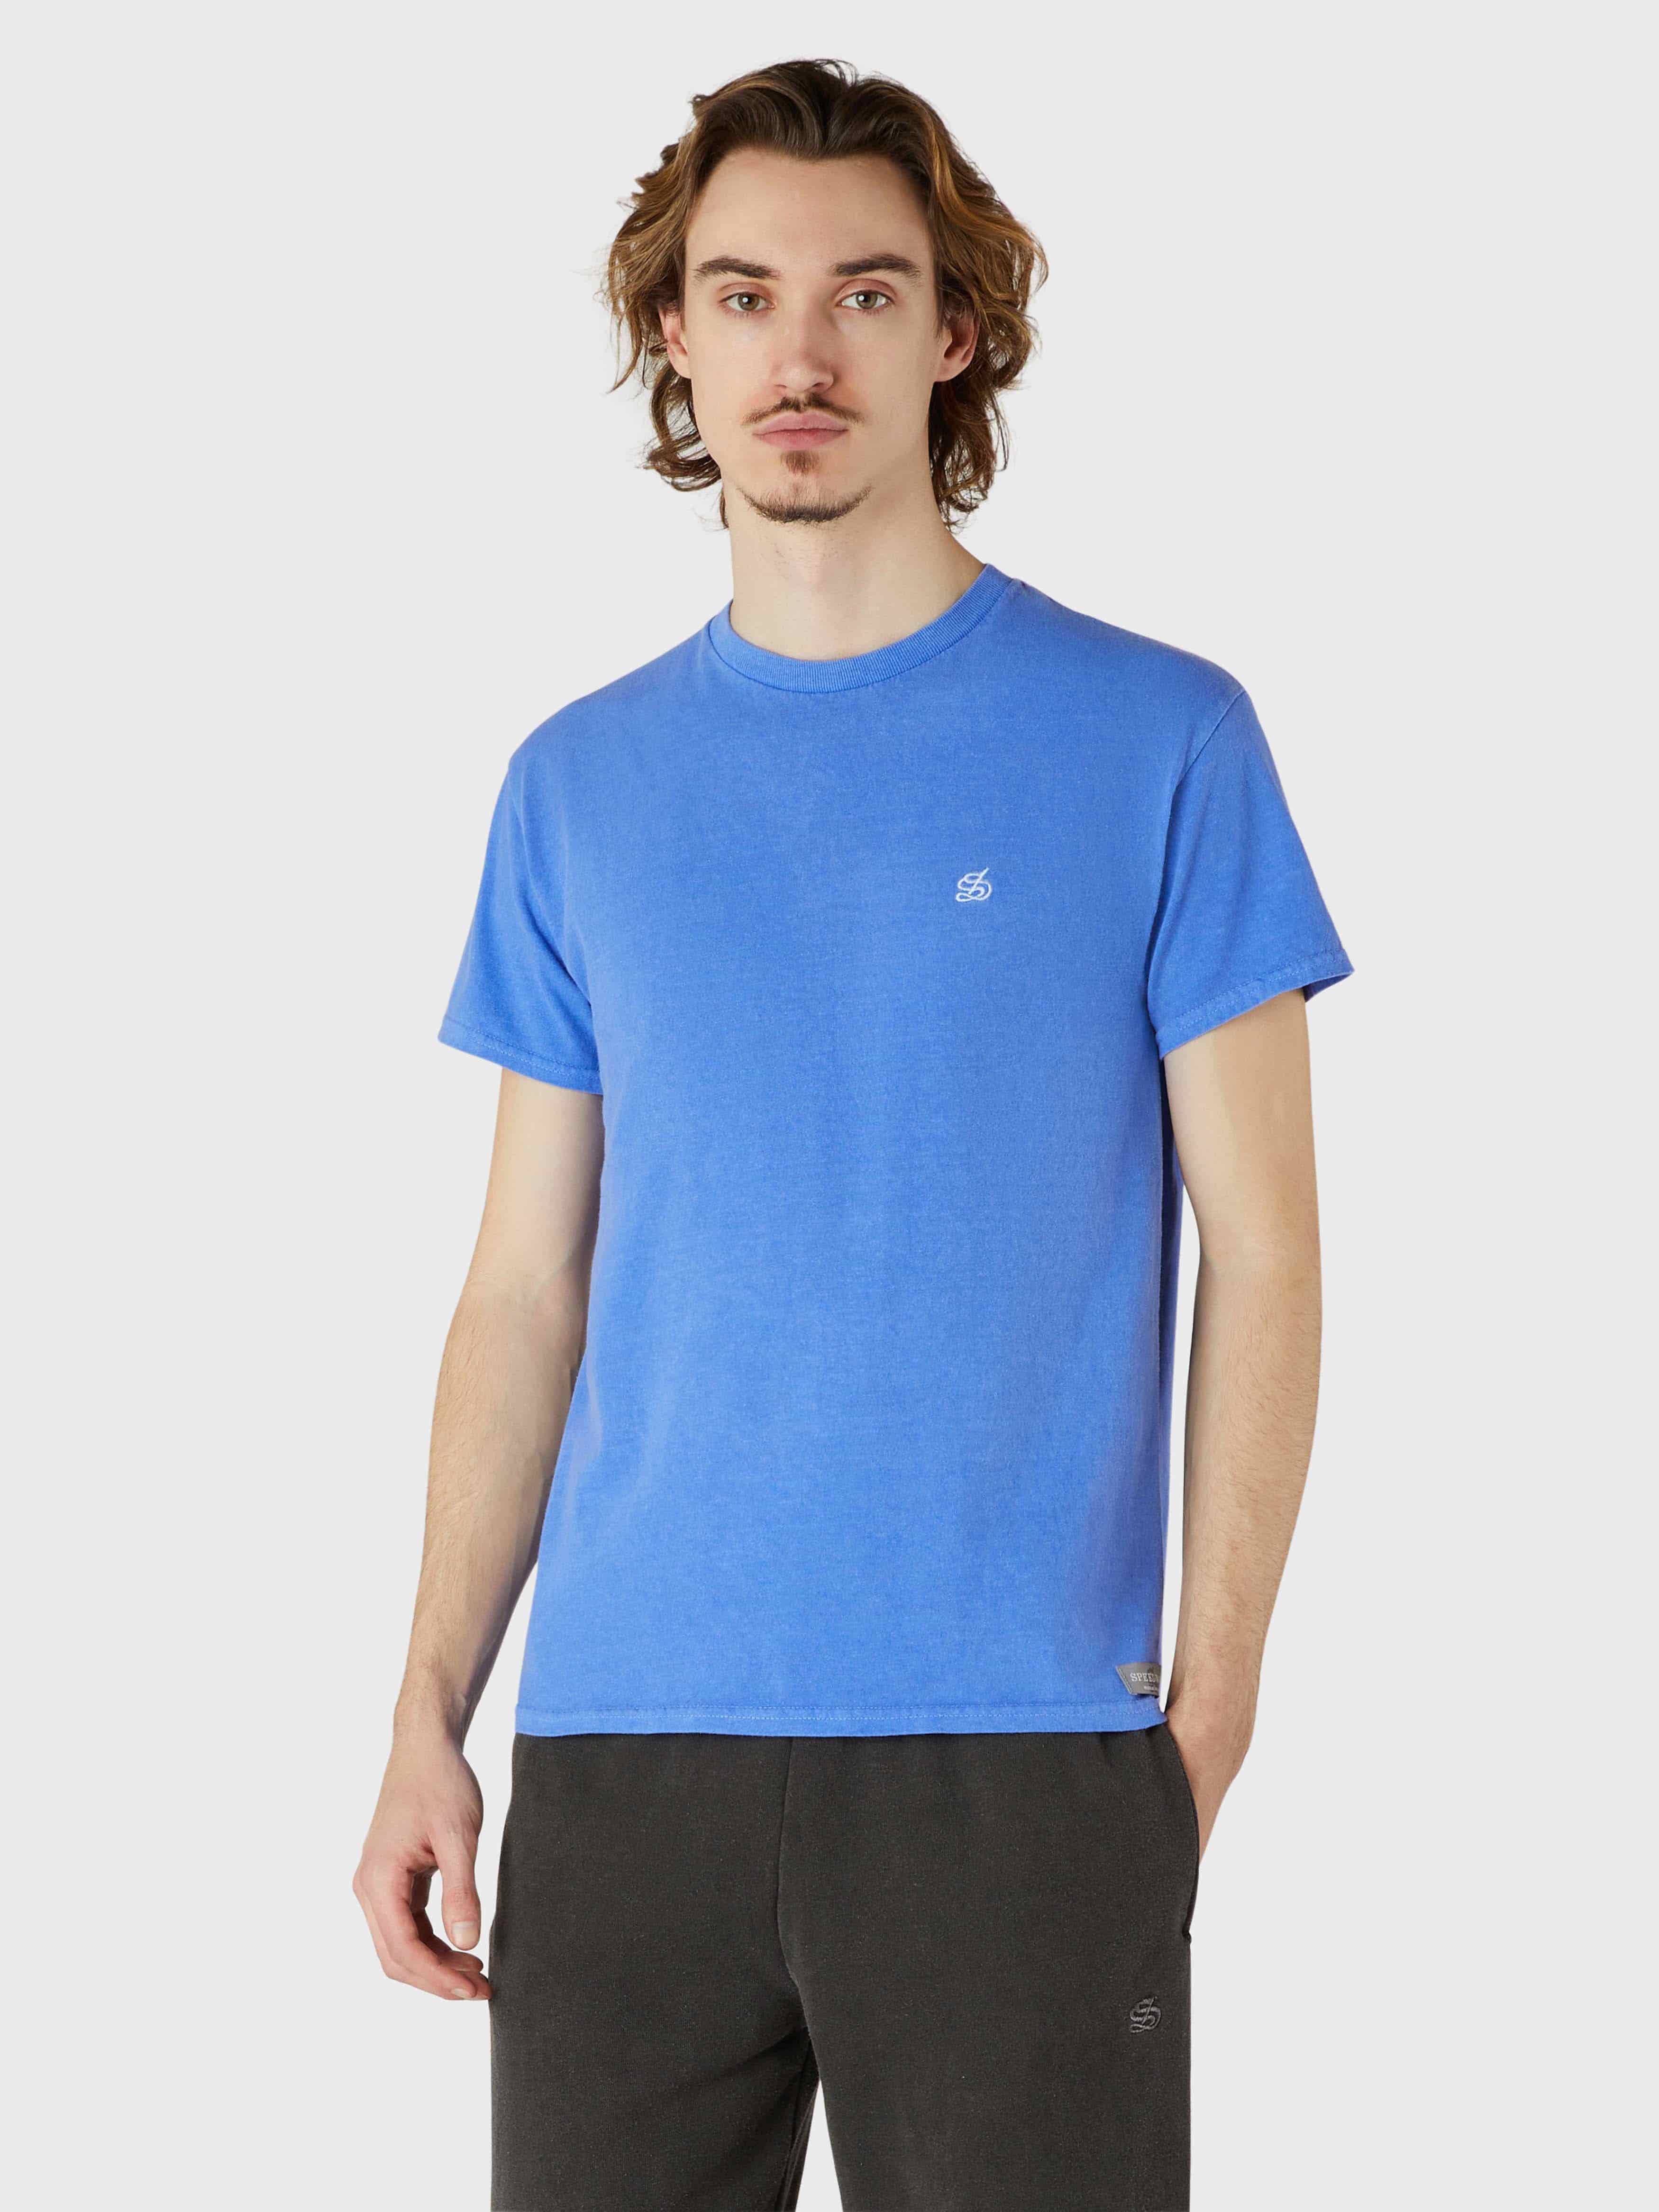 Classic Speedway Short Sleeve T-Shirt - Ocean Blue